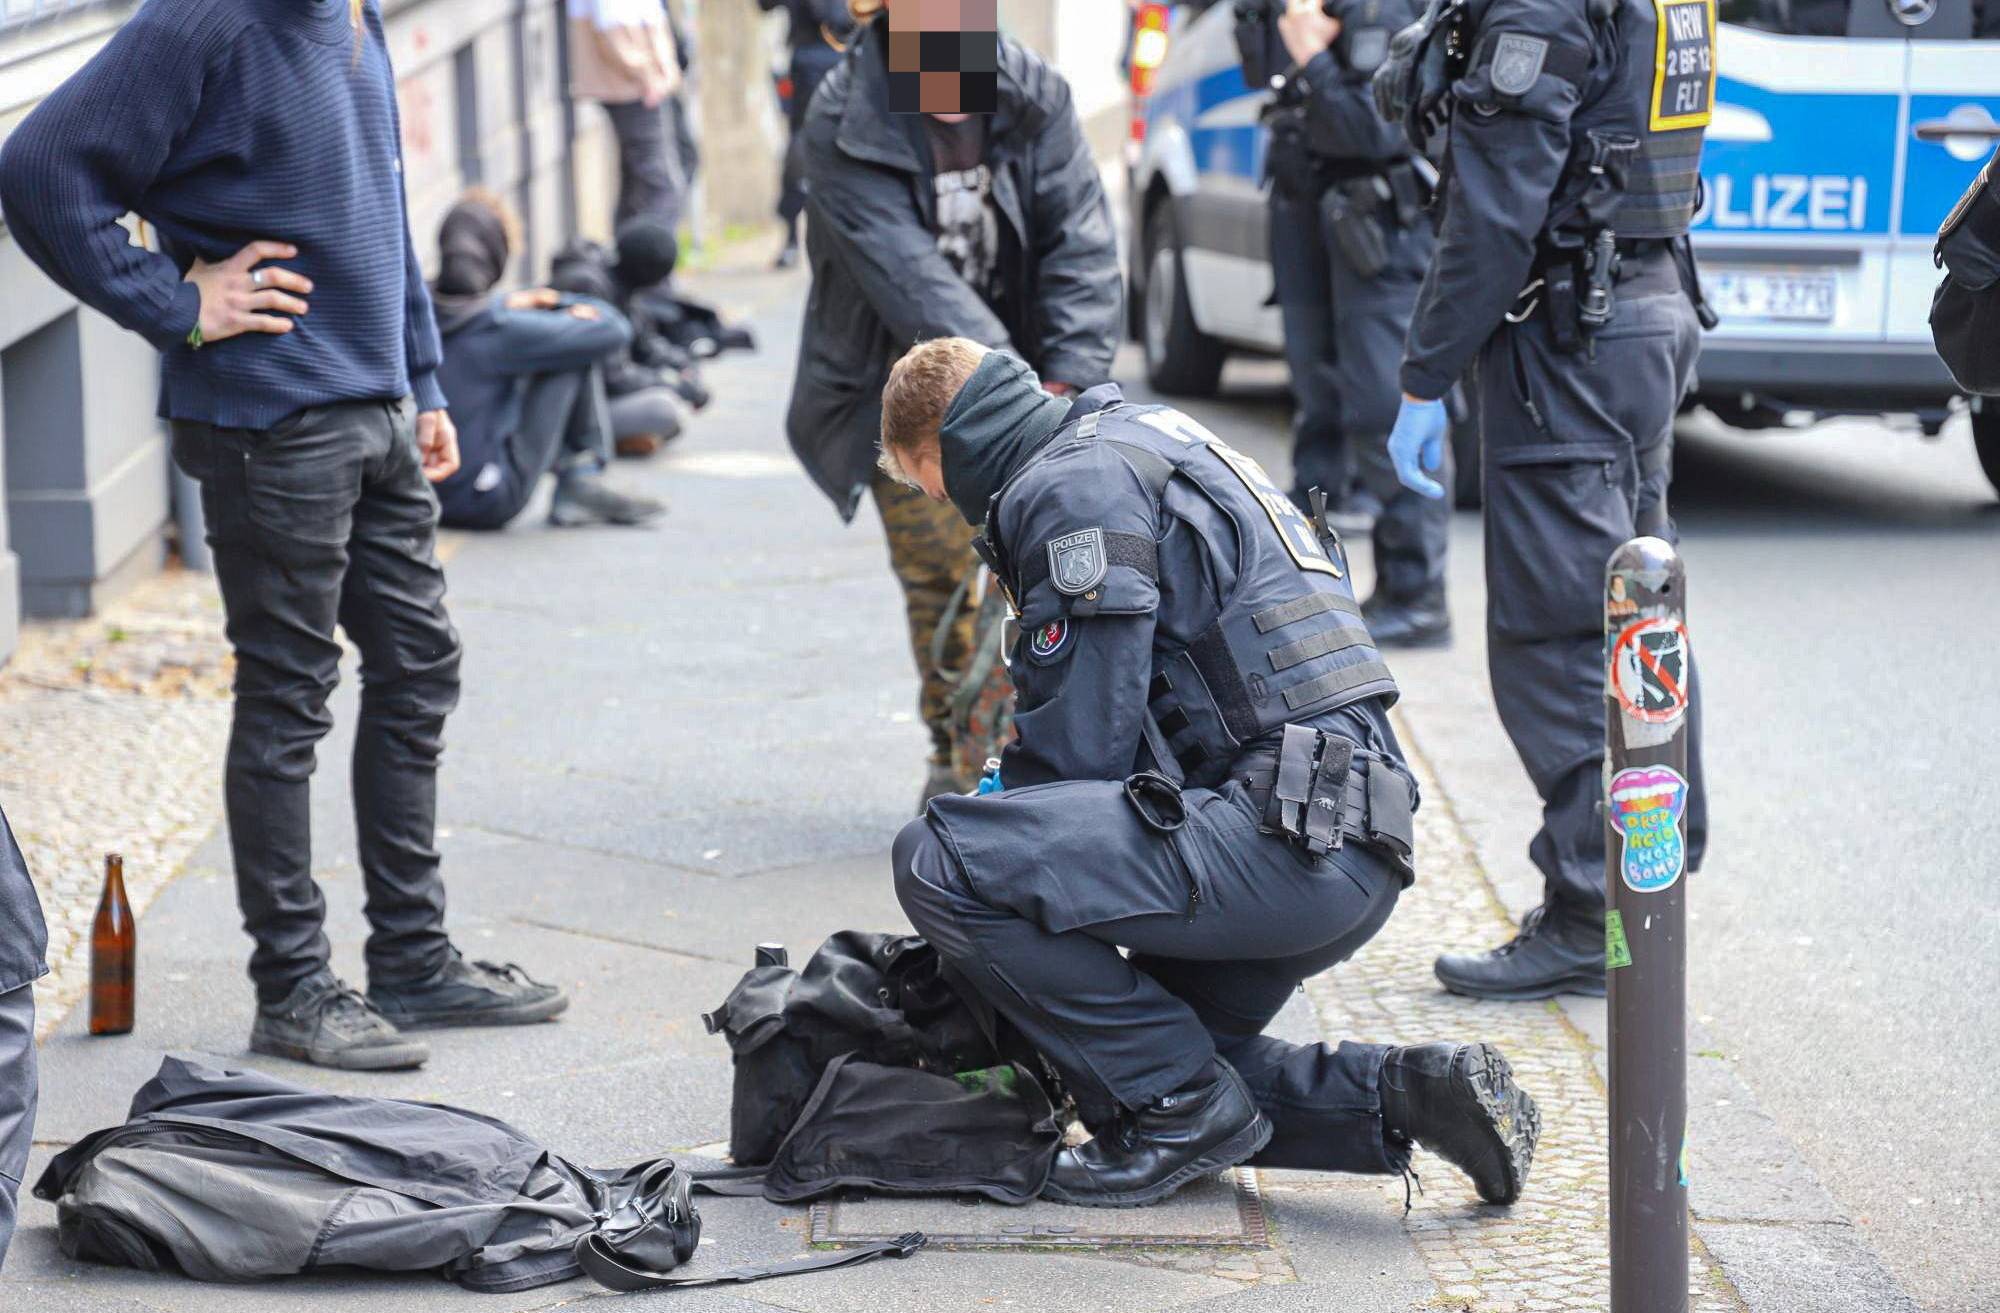 Maifeiertag: Polizei mit Großaufgebot